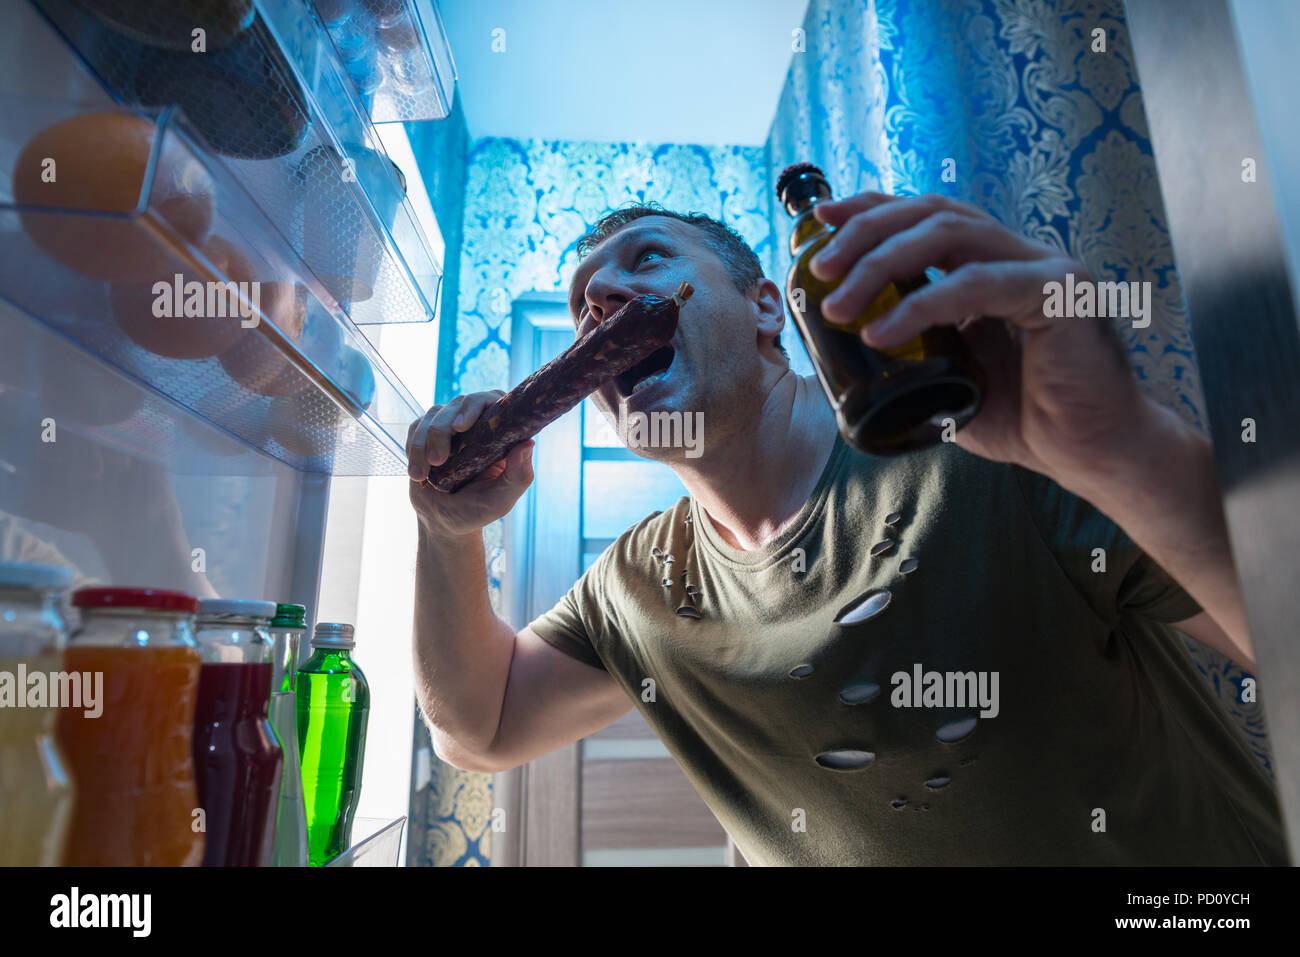 Gierig Mann einen großen Bissen von einer Salami Wurst, wie er in der  offenen Tür von seinem Kühlschrank mit einem kalten Bier in der anderen  Hand steht Stockfotografie - Alamy